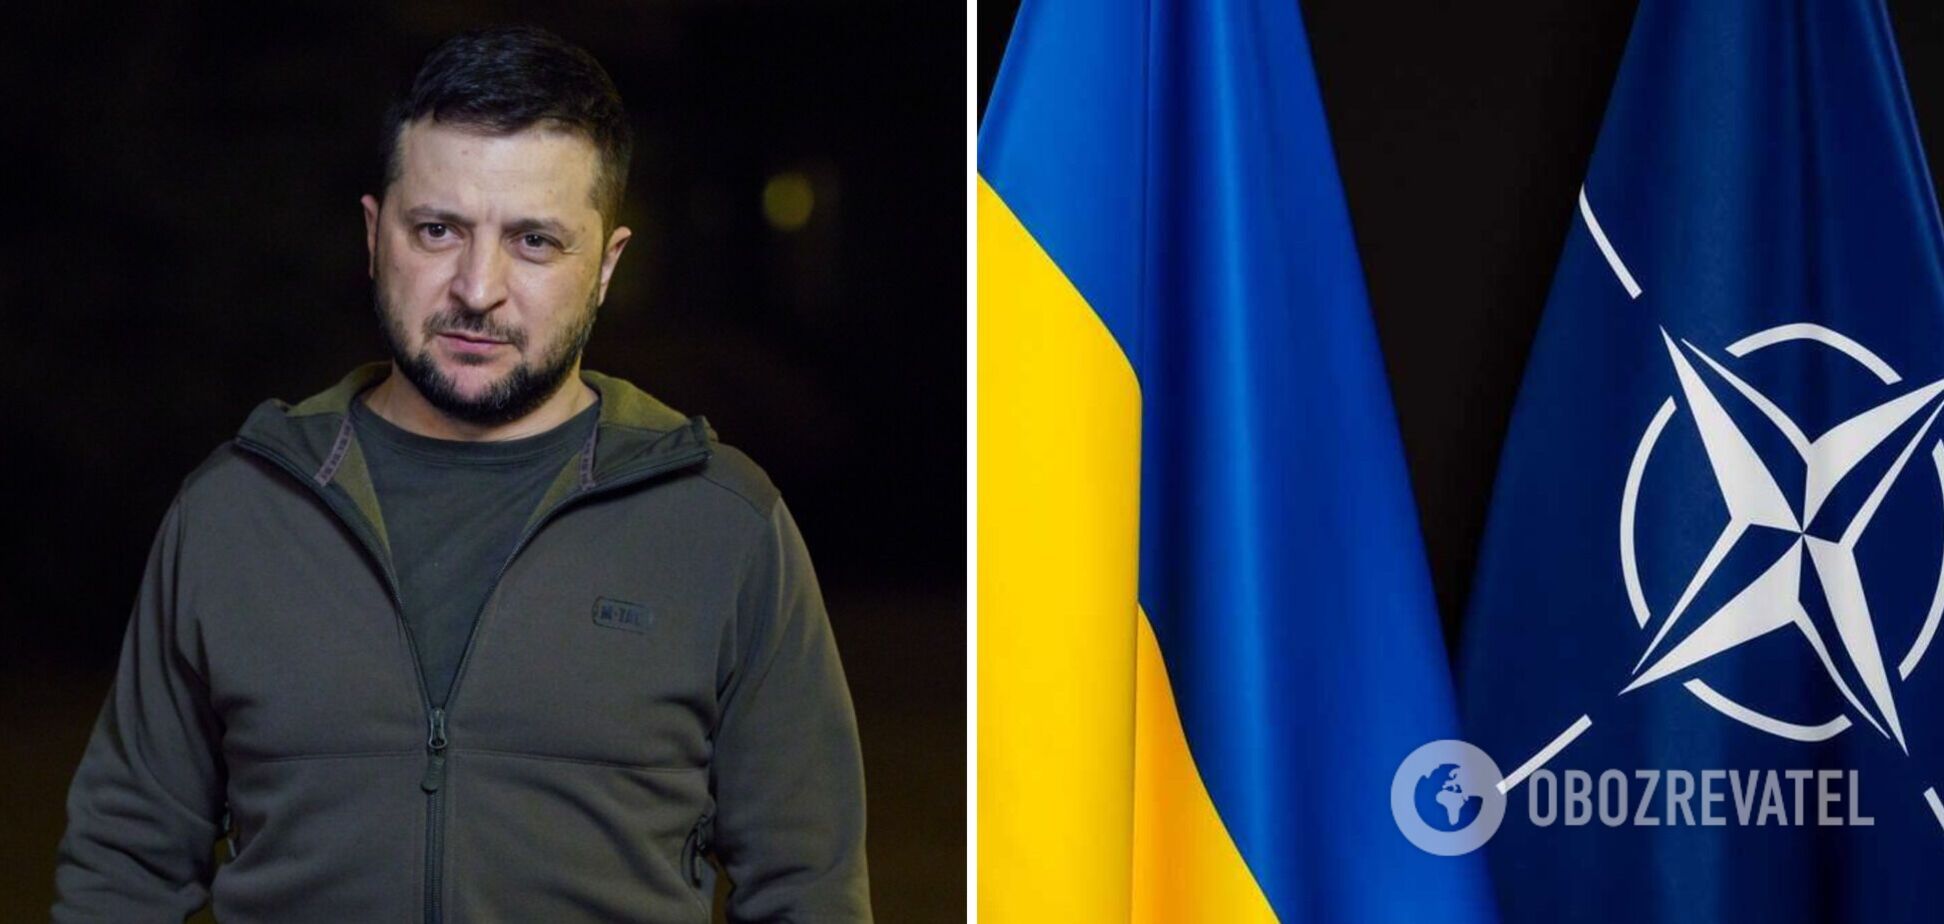 Запад не бросает Украину: какие 'подарки' привез Зеленский из Европы